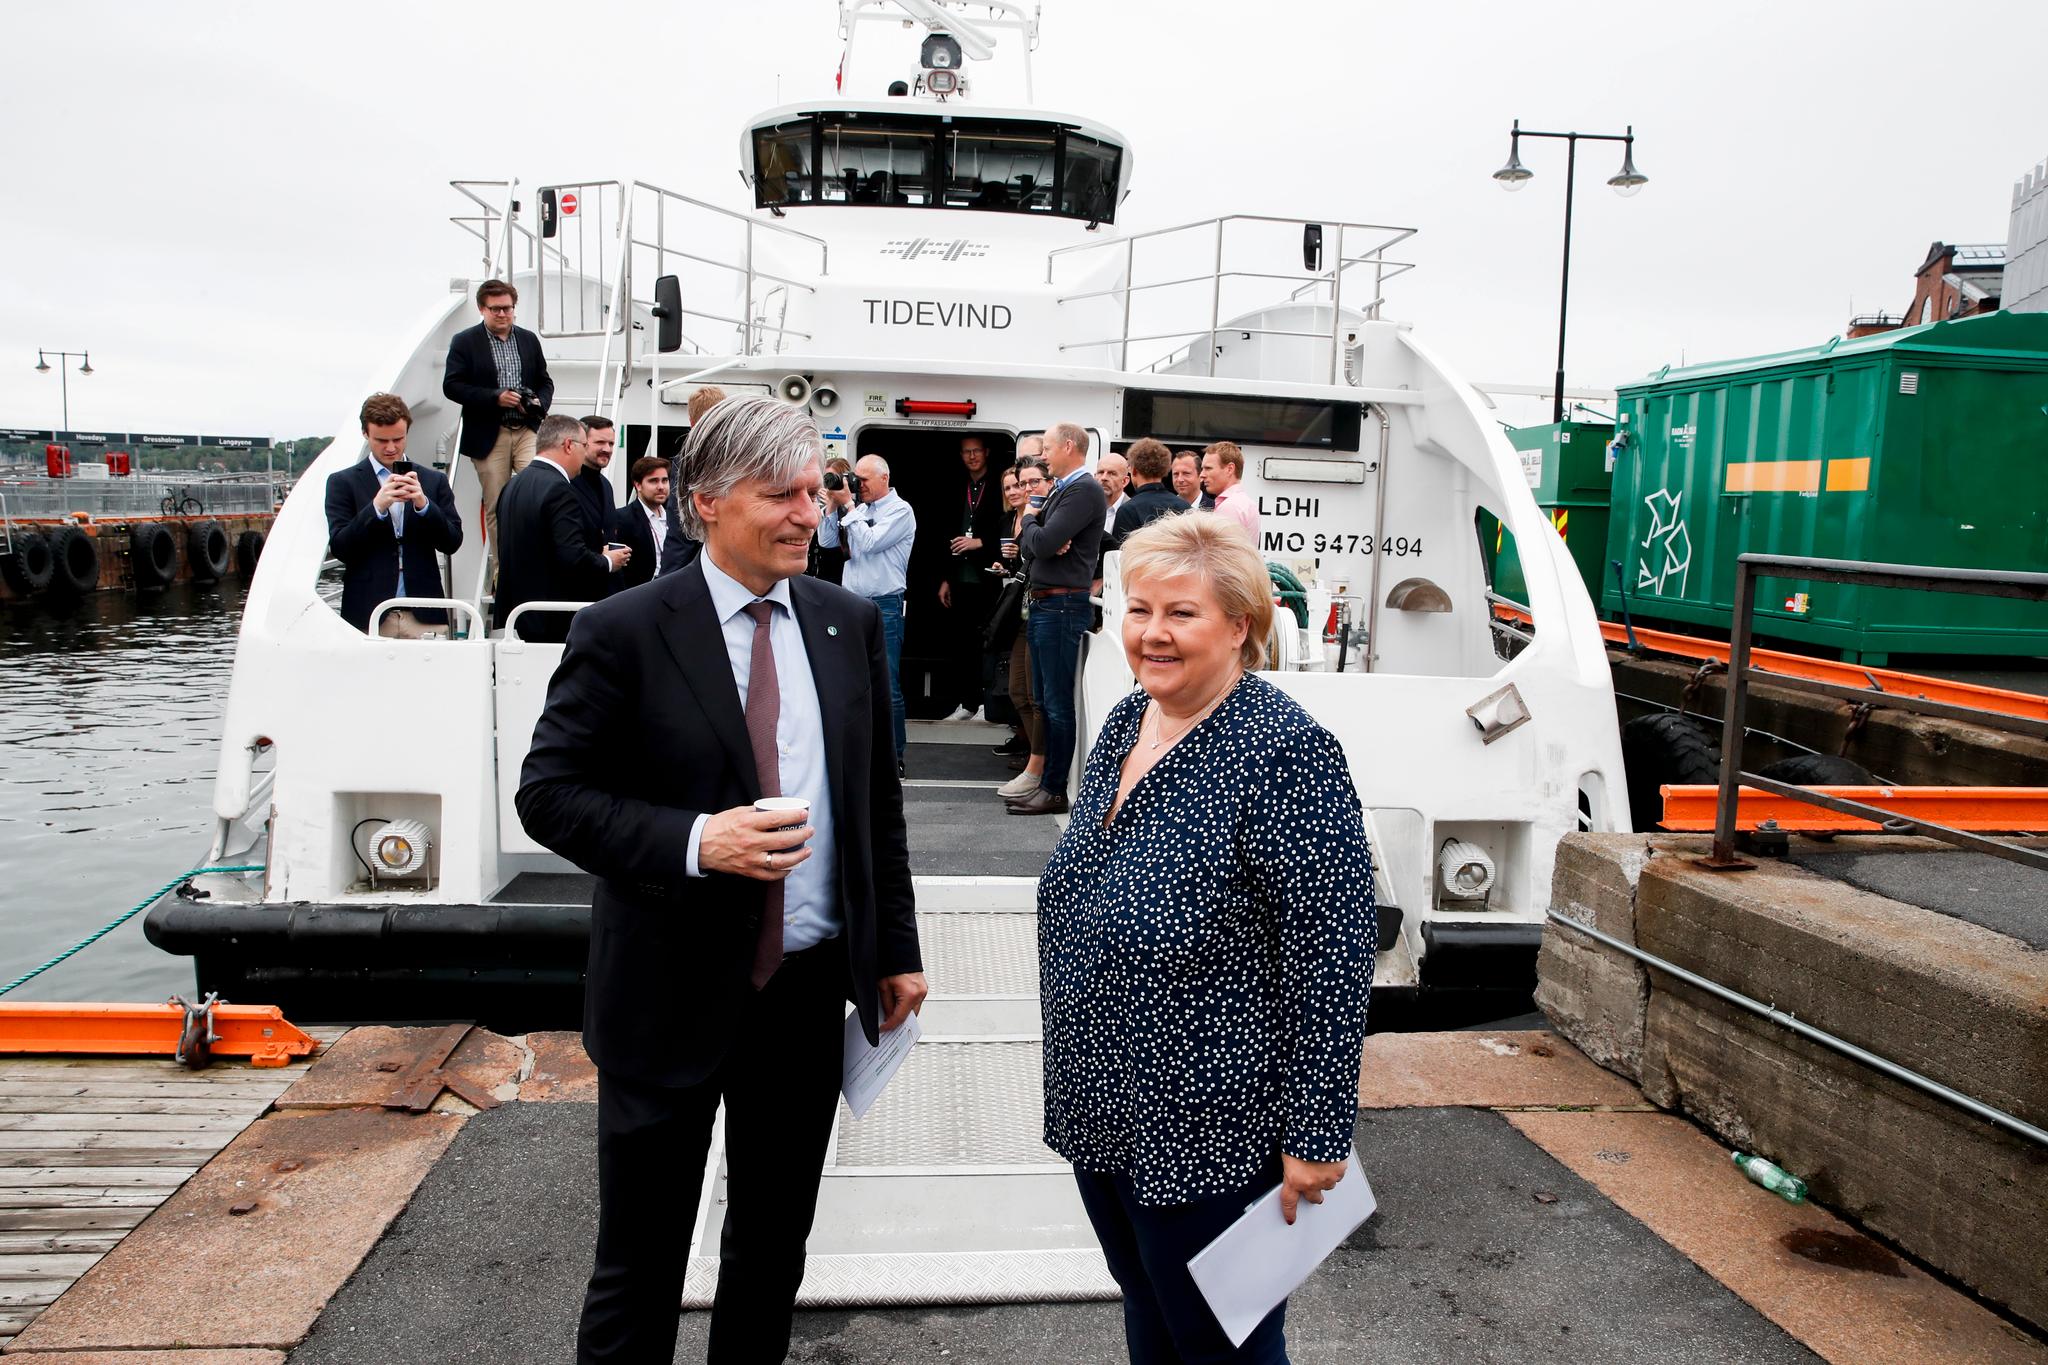 Klimaminister Ola Elvestuen, her sammen med statsminister Erna Solberg, vil  fremskynde utviklingen av utslippsfrie hurtigbåter. I bakgrunnen Nesoddbåten Tidevind.